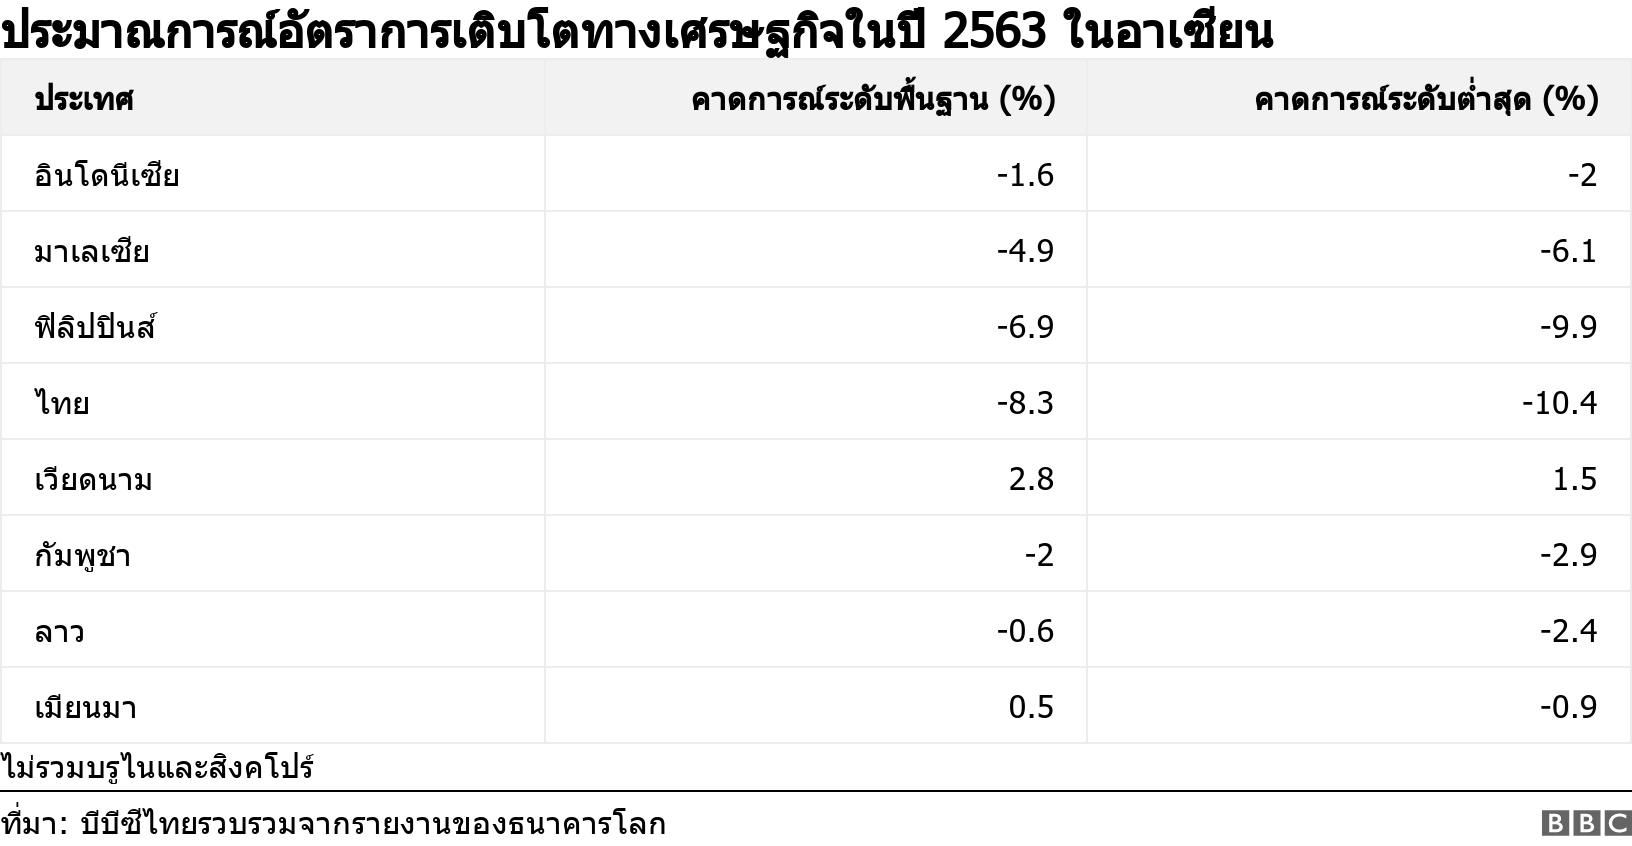 ประมาณการณ์อัตราการเติบโตทางเศรษฐกิจในปี 2563 ในอาเซียน. .  ไม่รวมบรูไนและสิงคโปร์ .